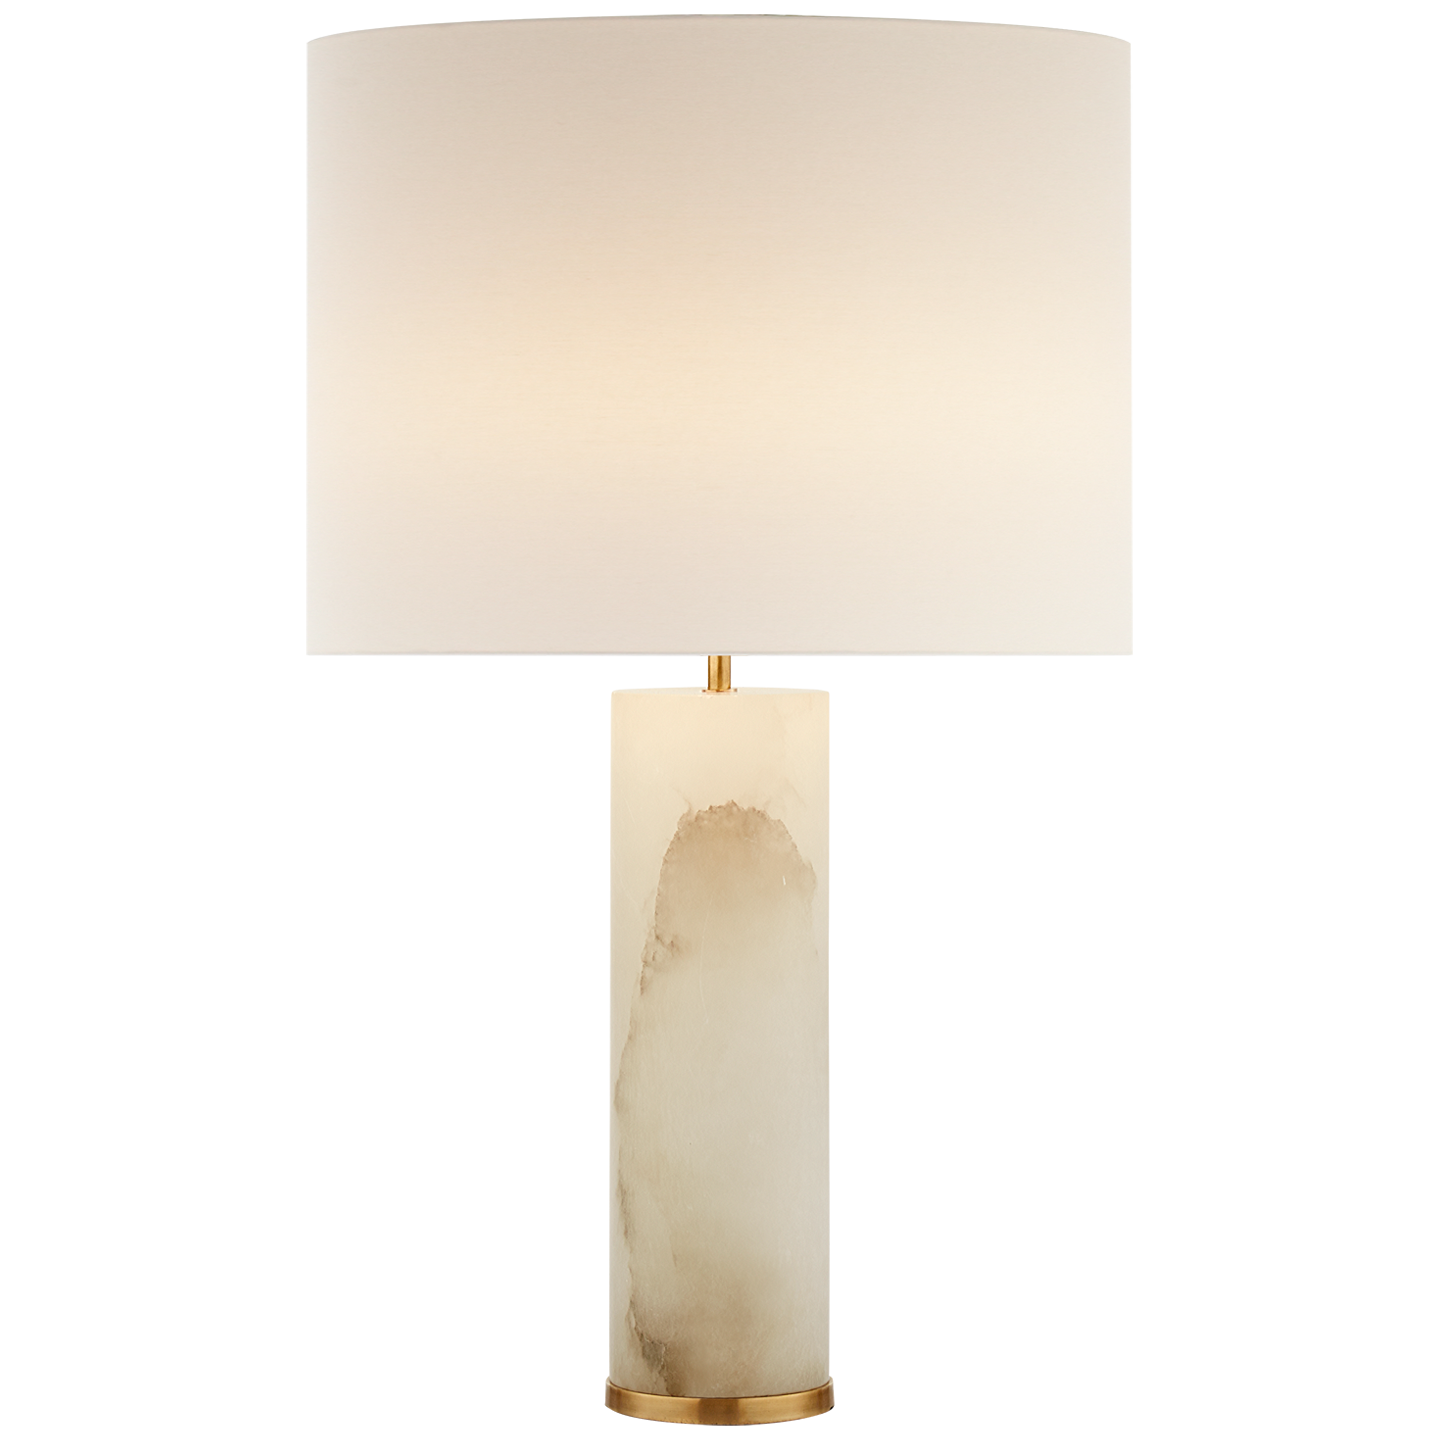 Lineham Table Lamp, Alabaster